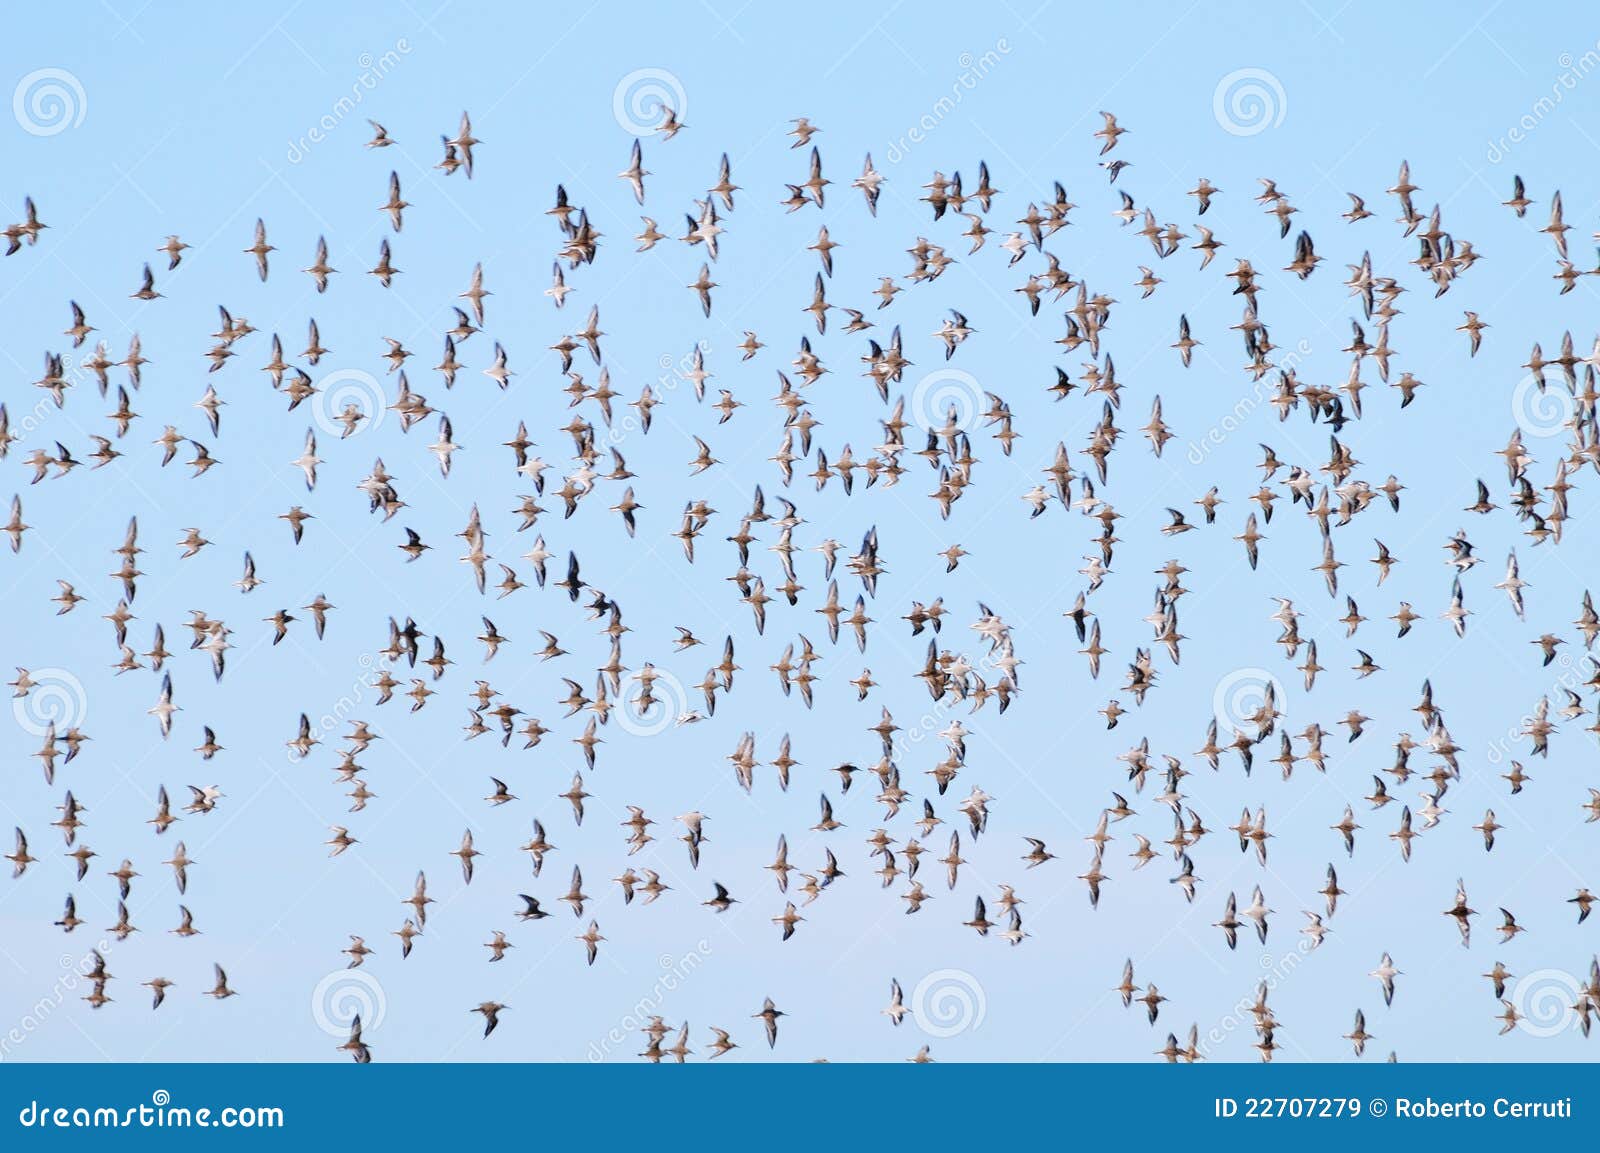 hundreds of sea birds